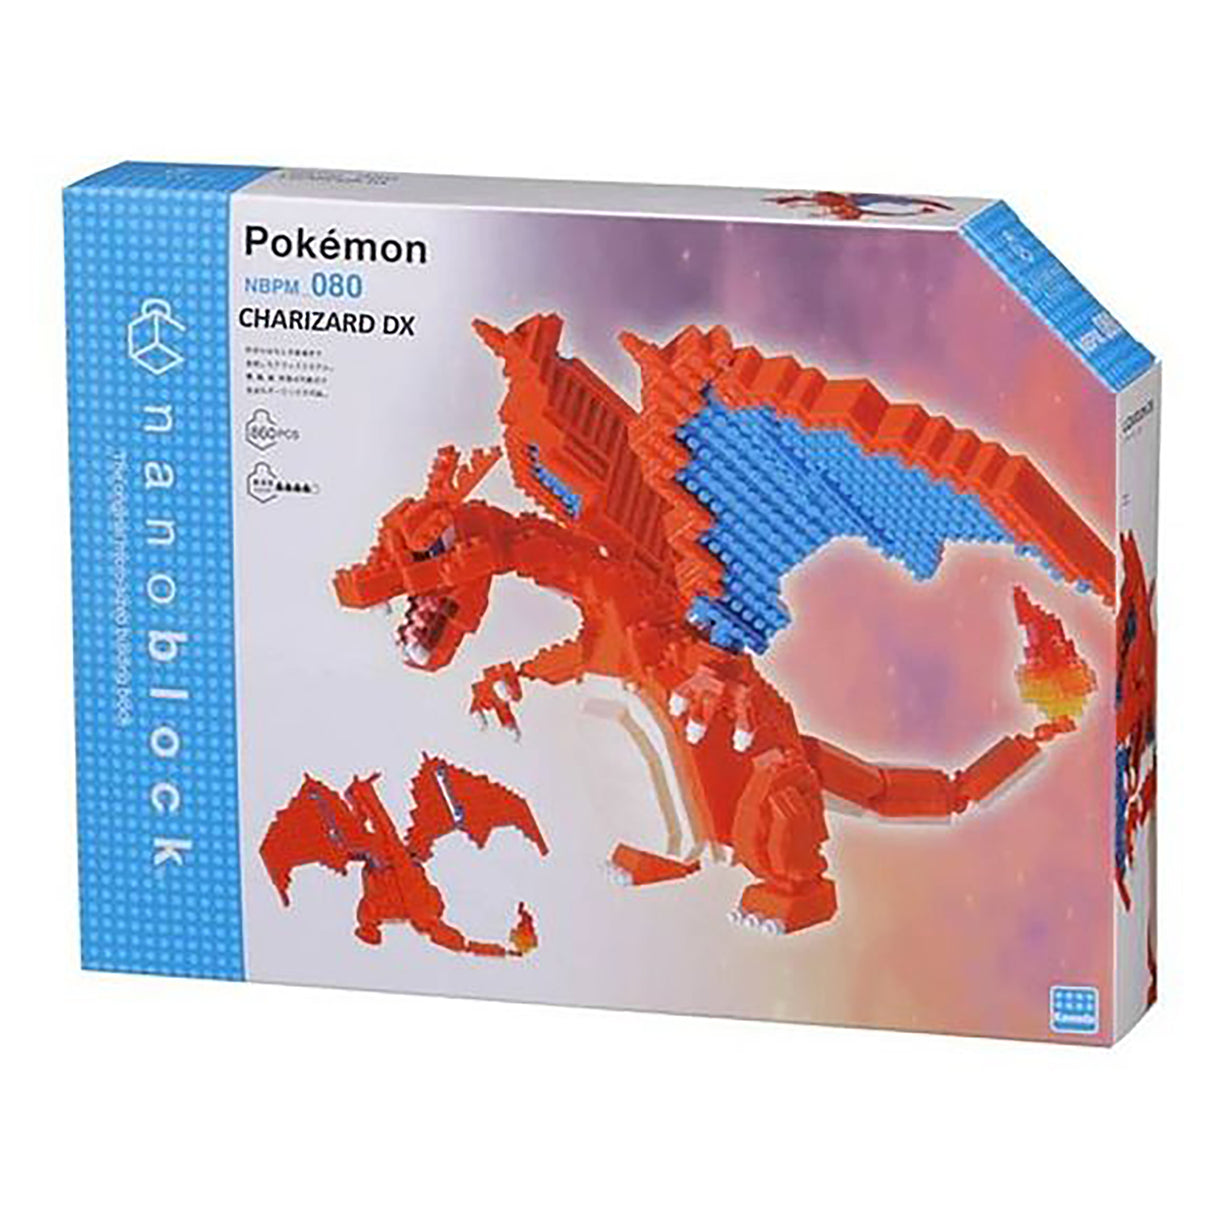 nanoblock Pokemon - DX Charizard (860 pieces)